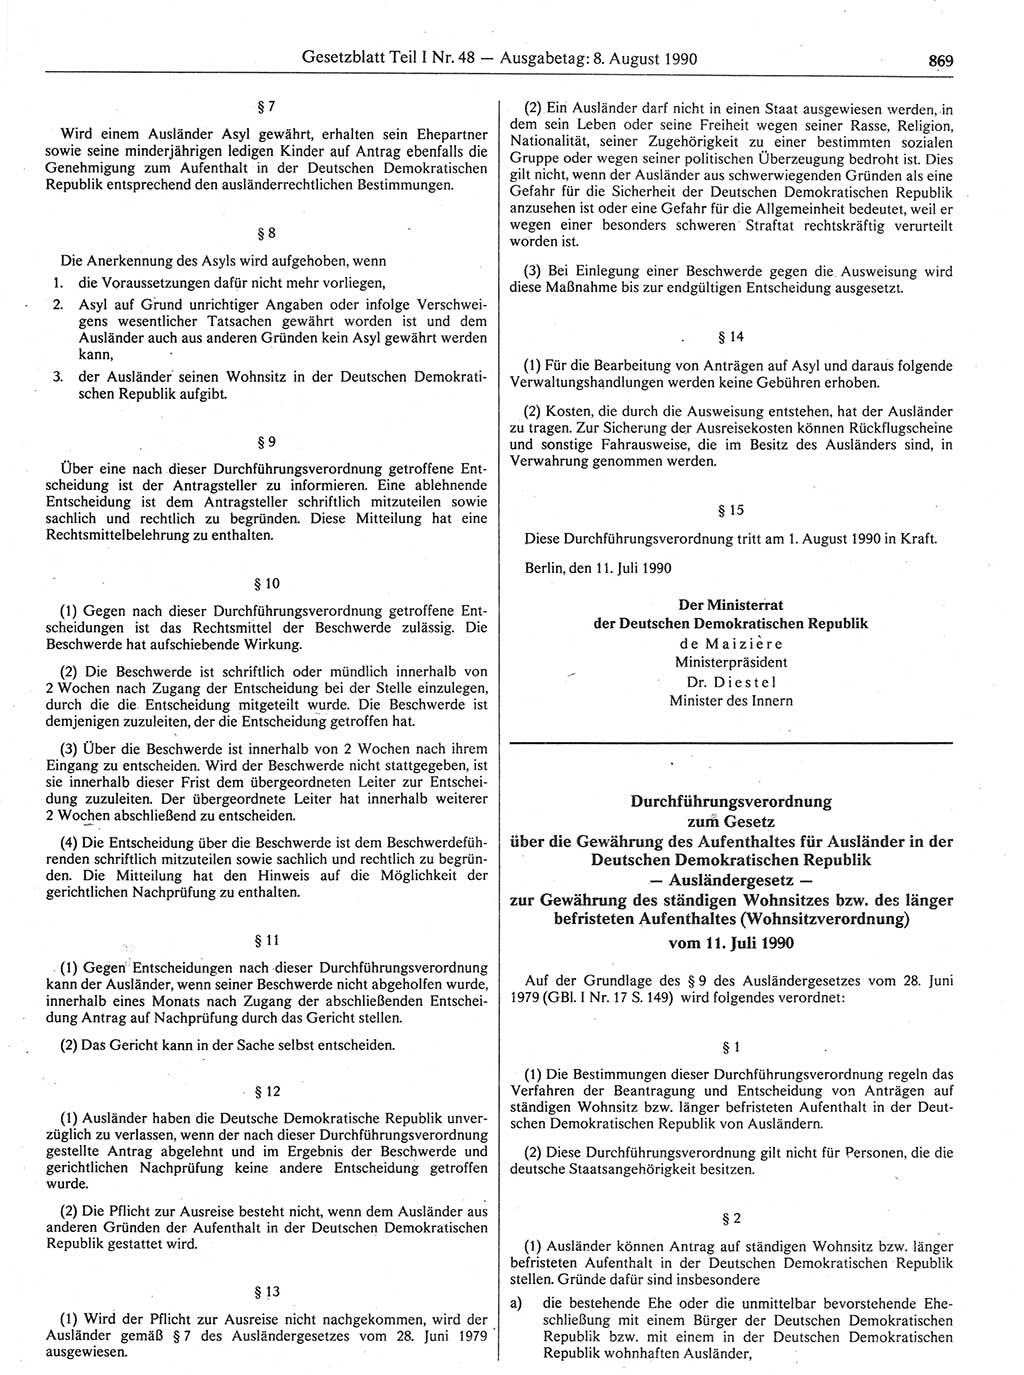 Gesetzblatt (GBl.) der Deutschen Demokratischen Republik (DDR) Teil Ⅰ 1990, Seite 869 (GBl. DDR Ⅰ 1990, S. 869)